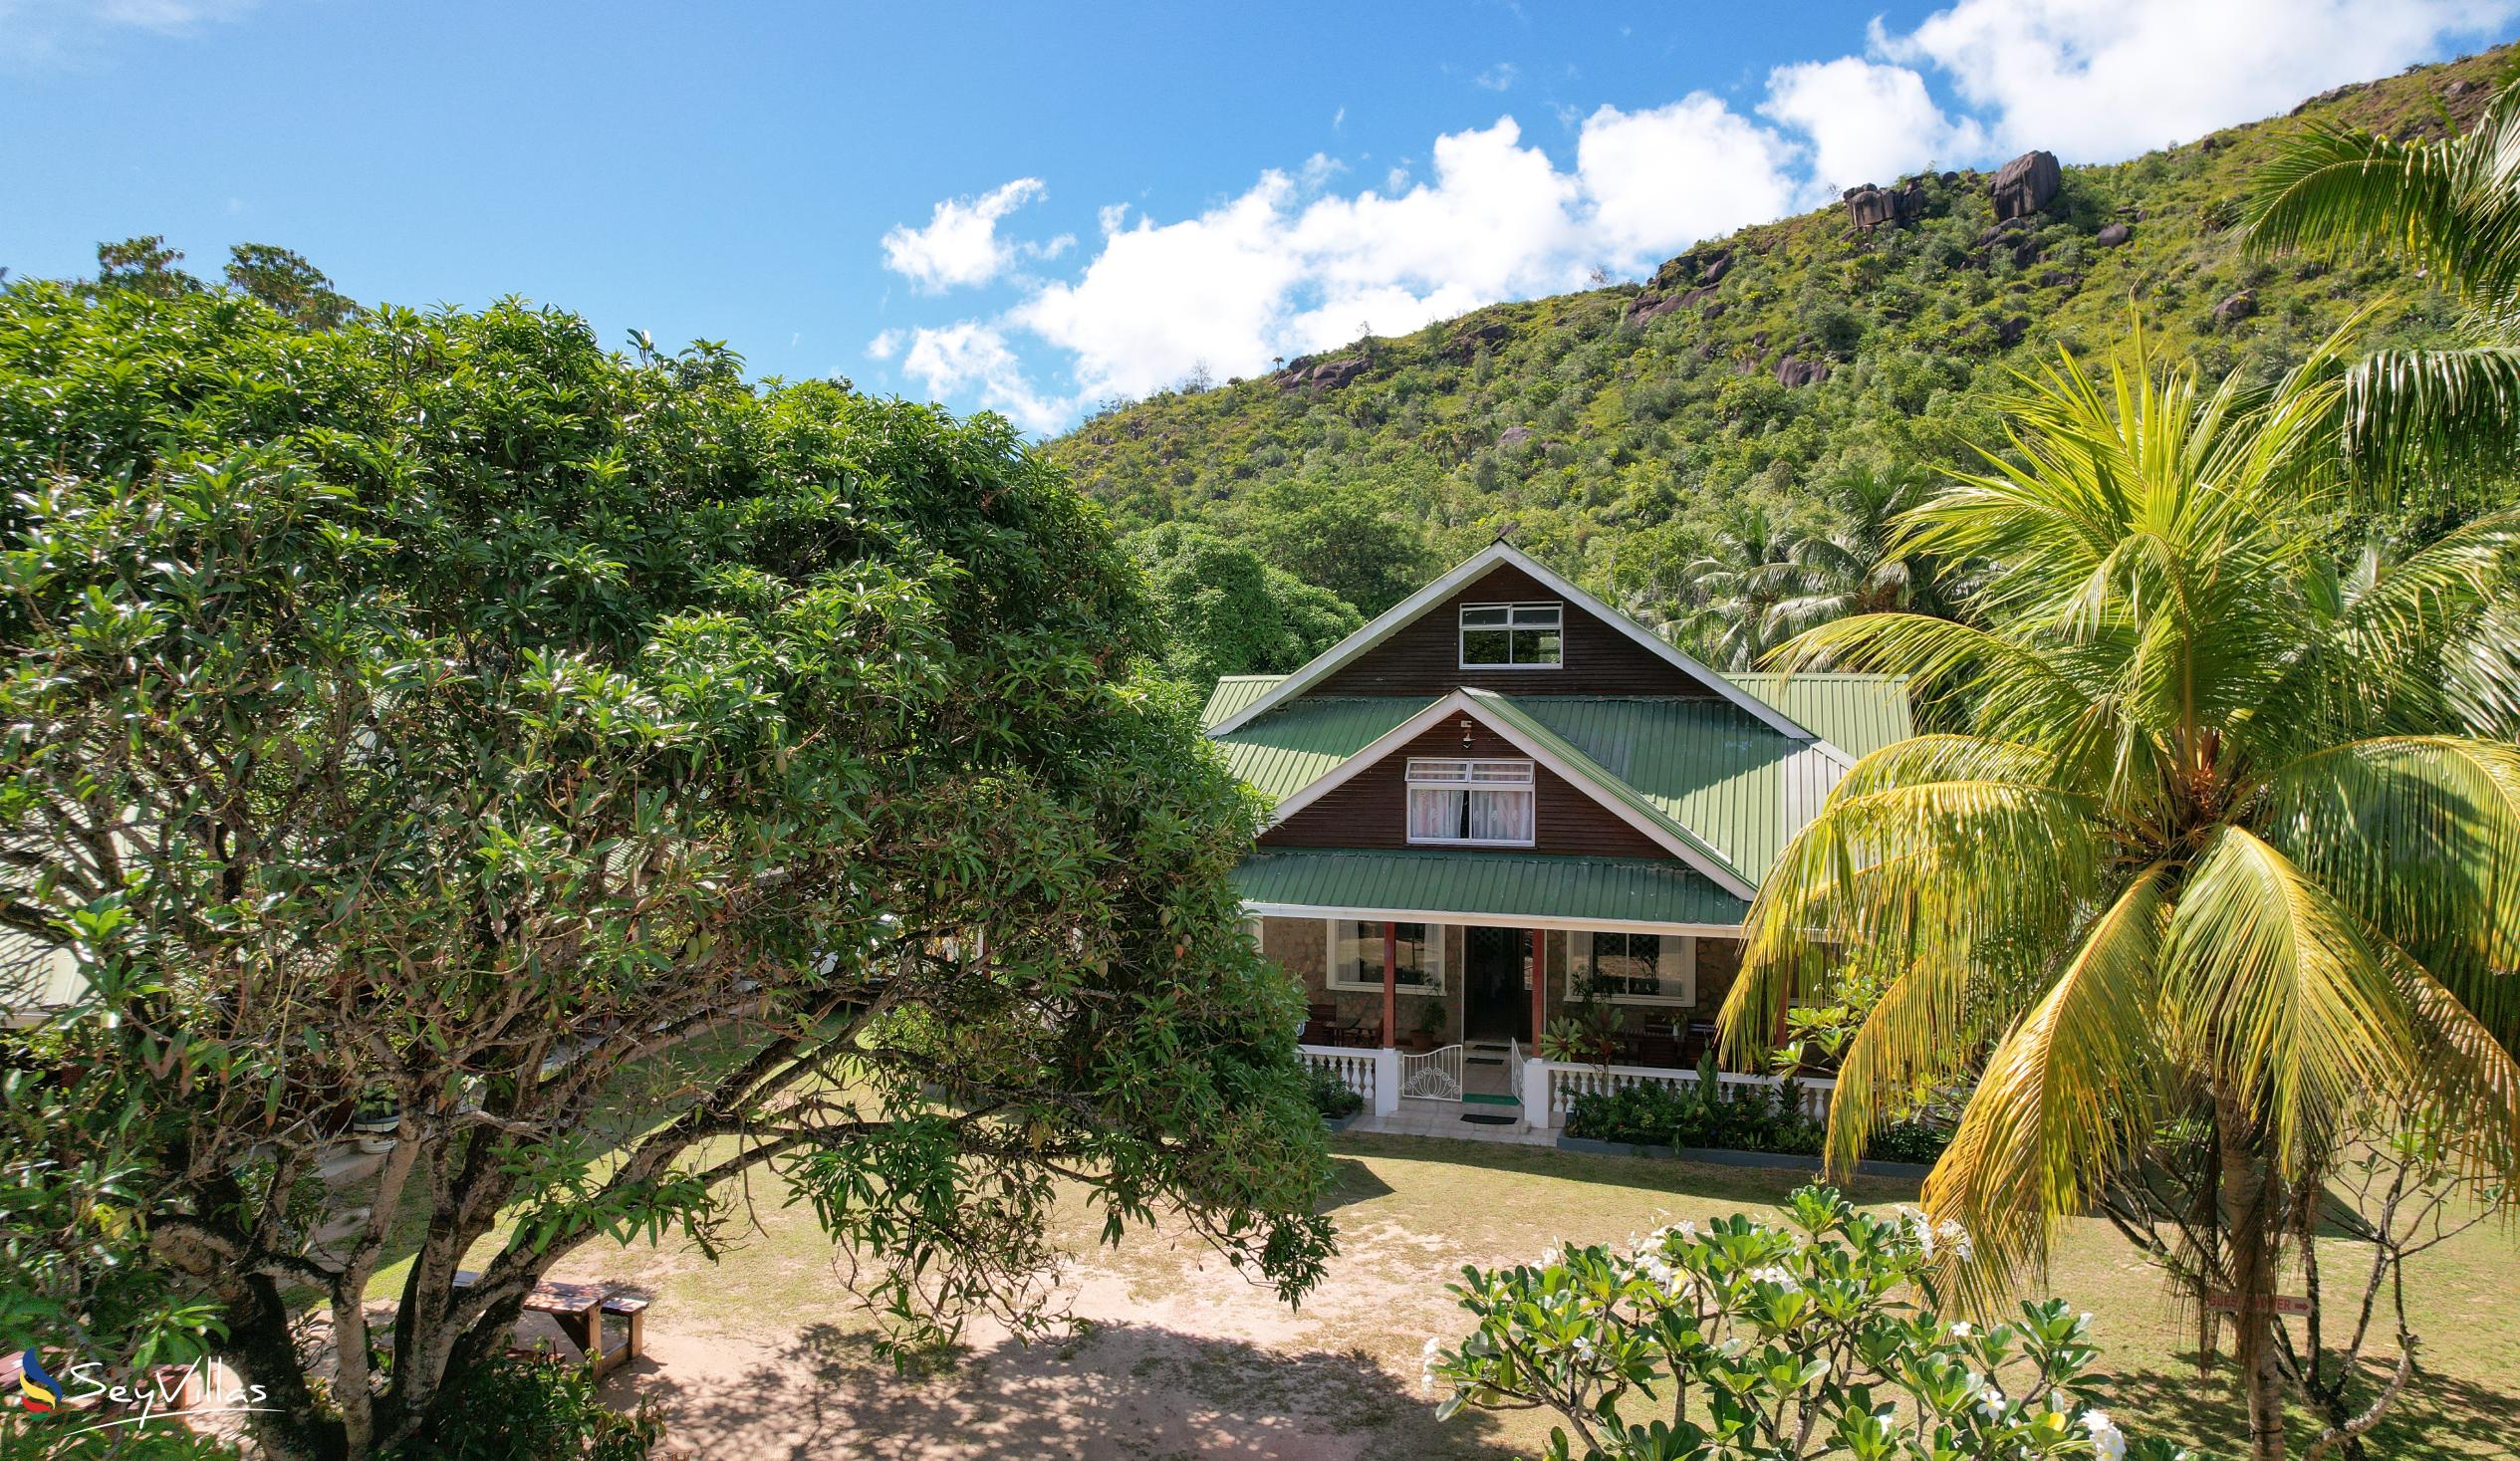 Foto 1: Le Chevalier Bay Guesthouse - Aussenbereich - Praslin (Seychellen)